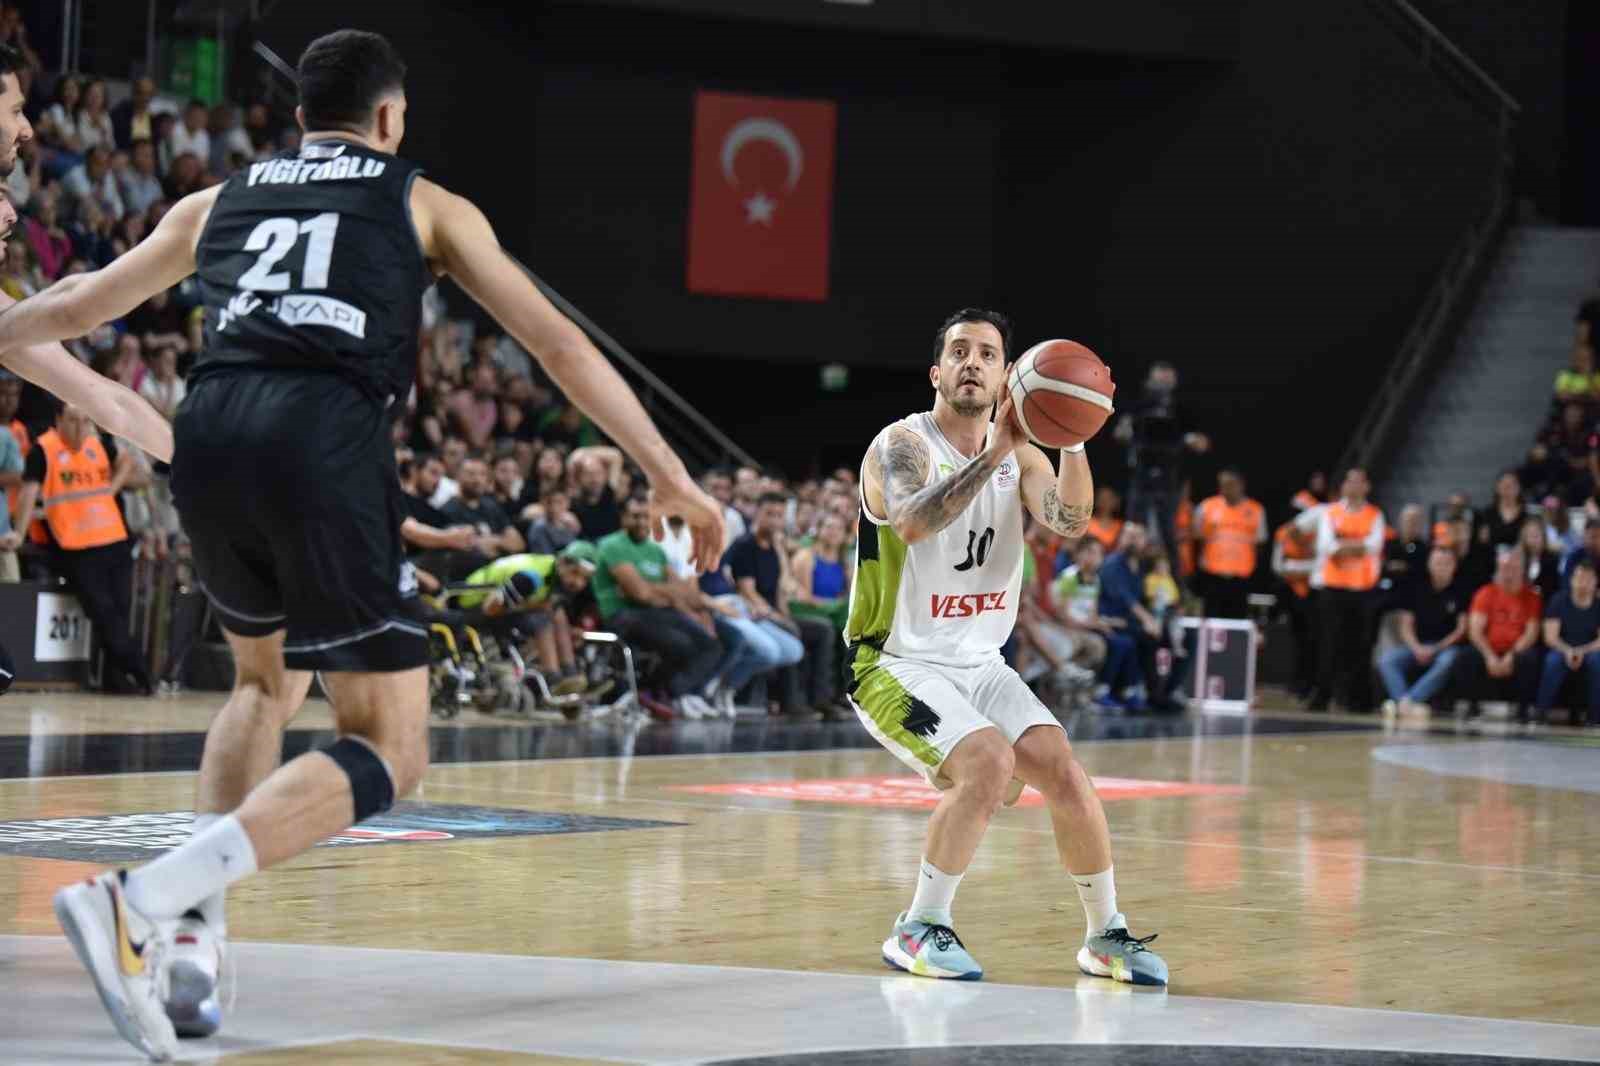 Basketbolda Beşiktaş yarı finalde